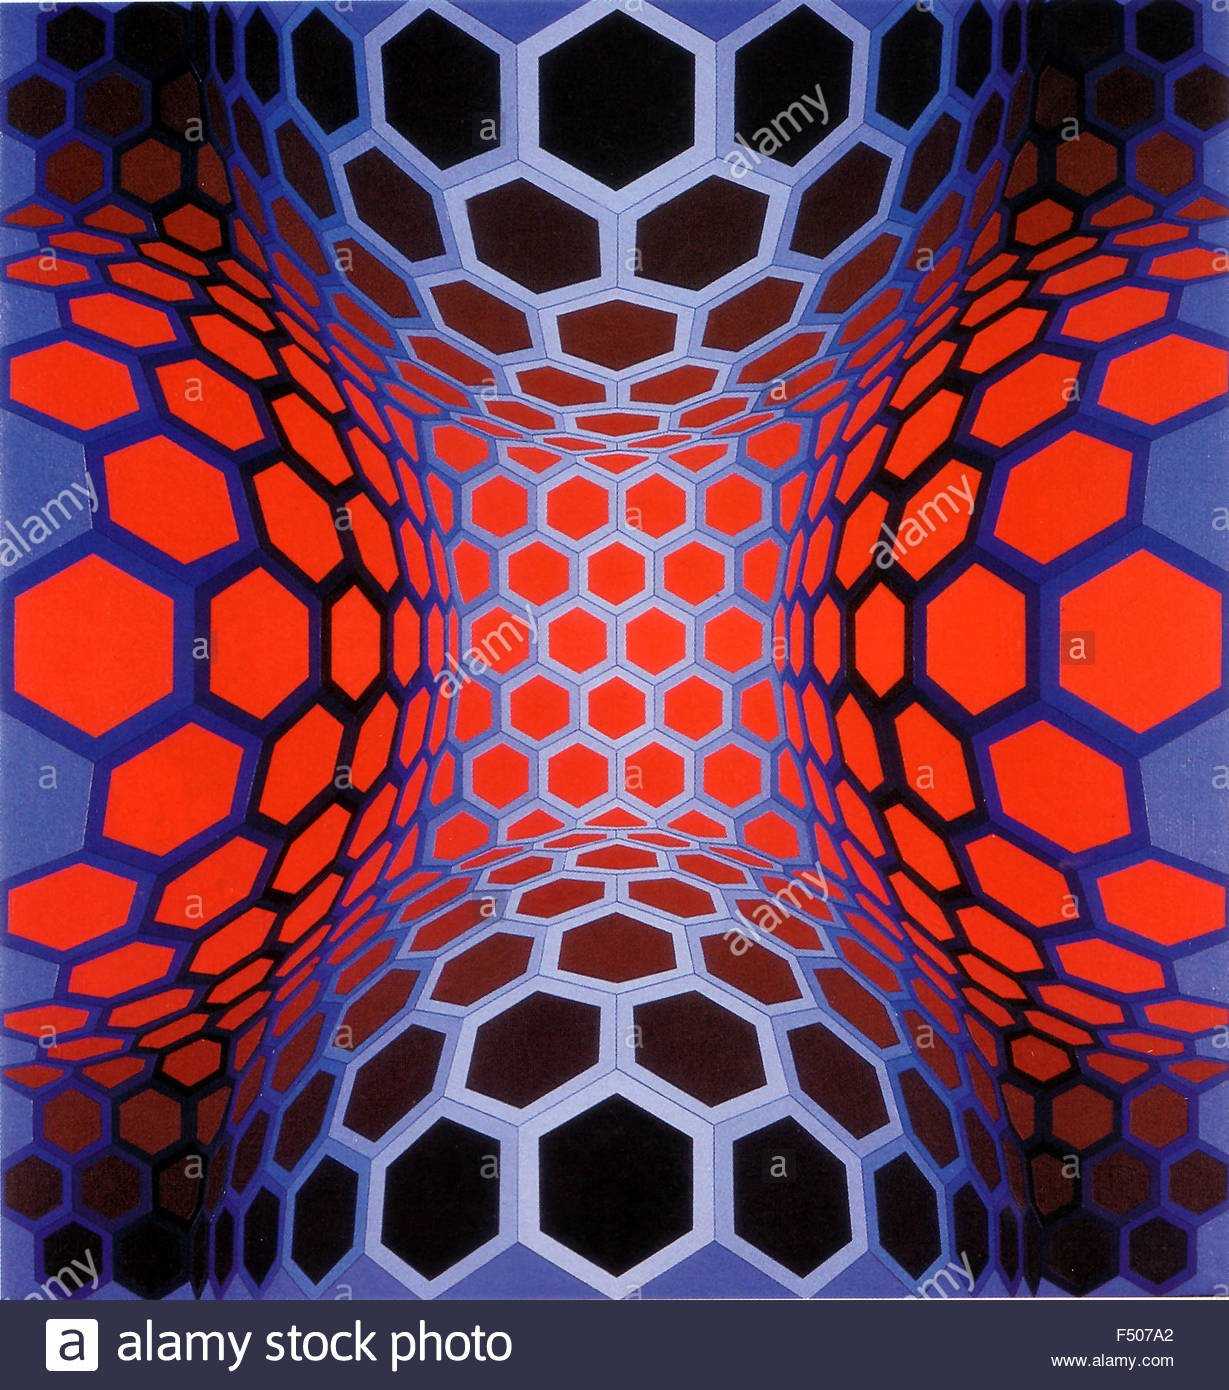 Оп-арт или оптическое искусство – одно из ответвлений геометрического абстрактного искусства середины ХХ века, основой которого являются оптические иллюзии Представители этого стиля стремились к созданию на плоской